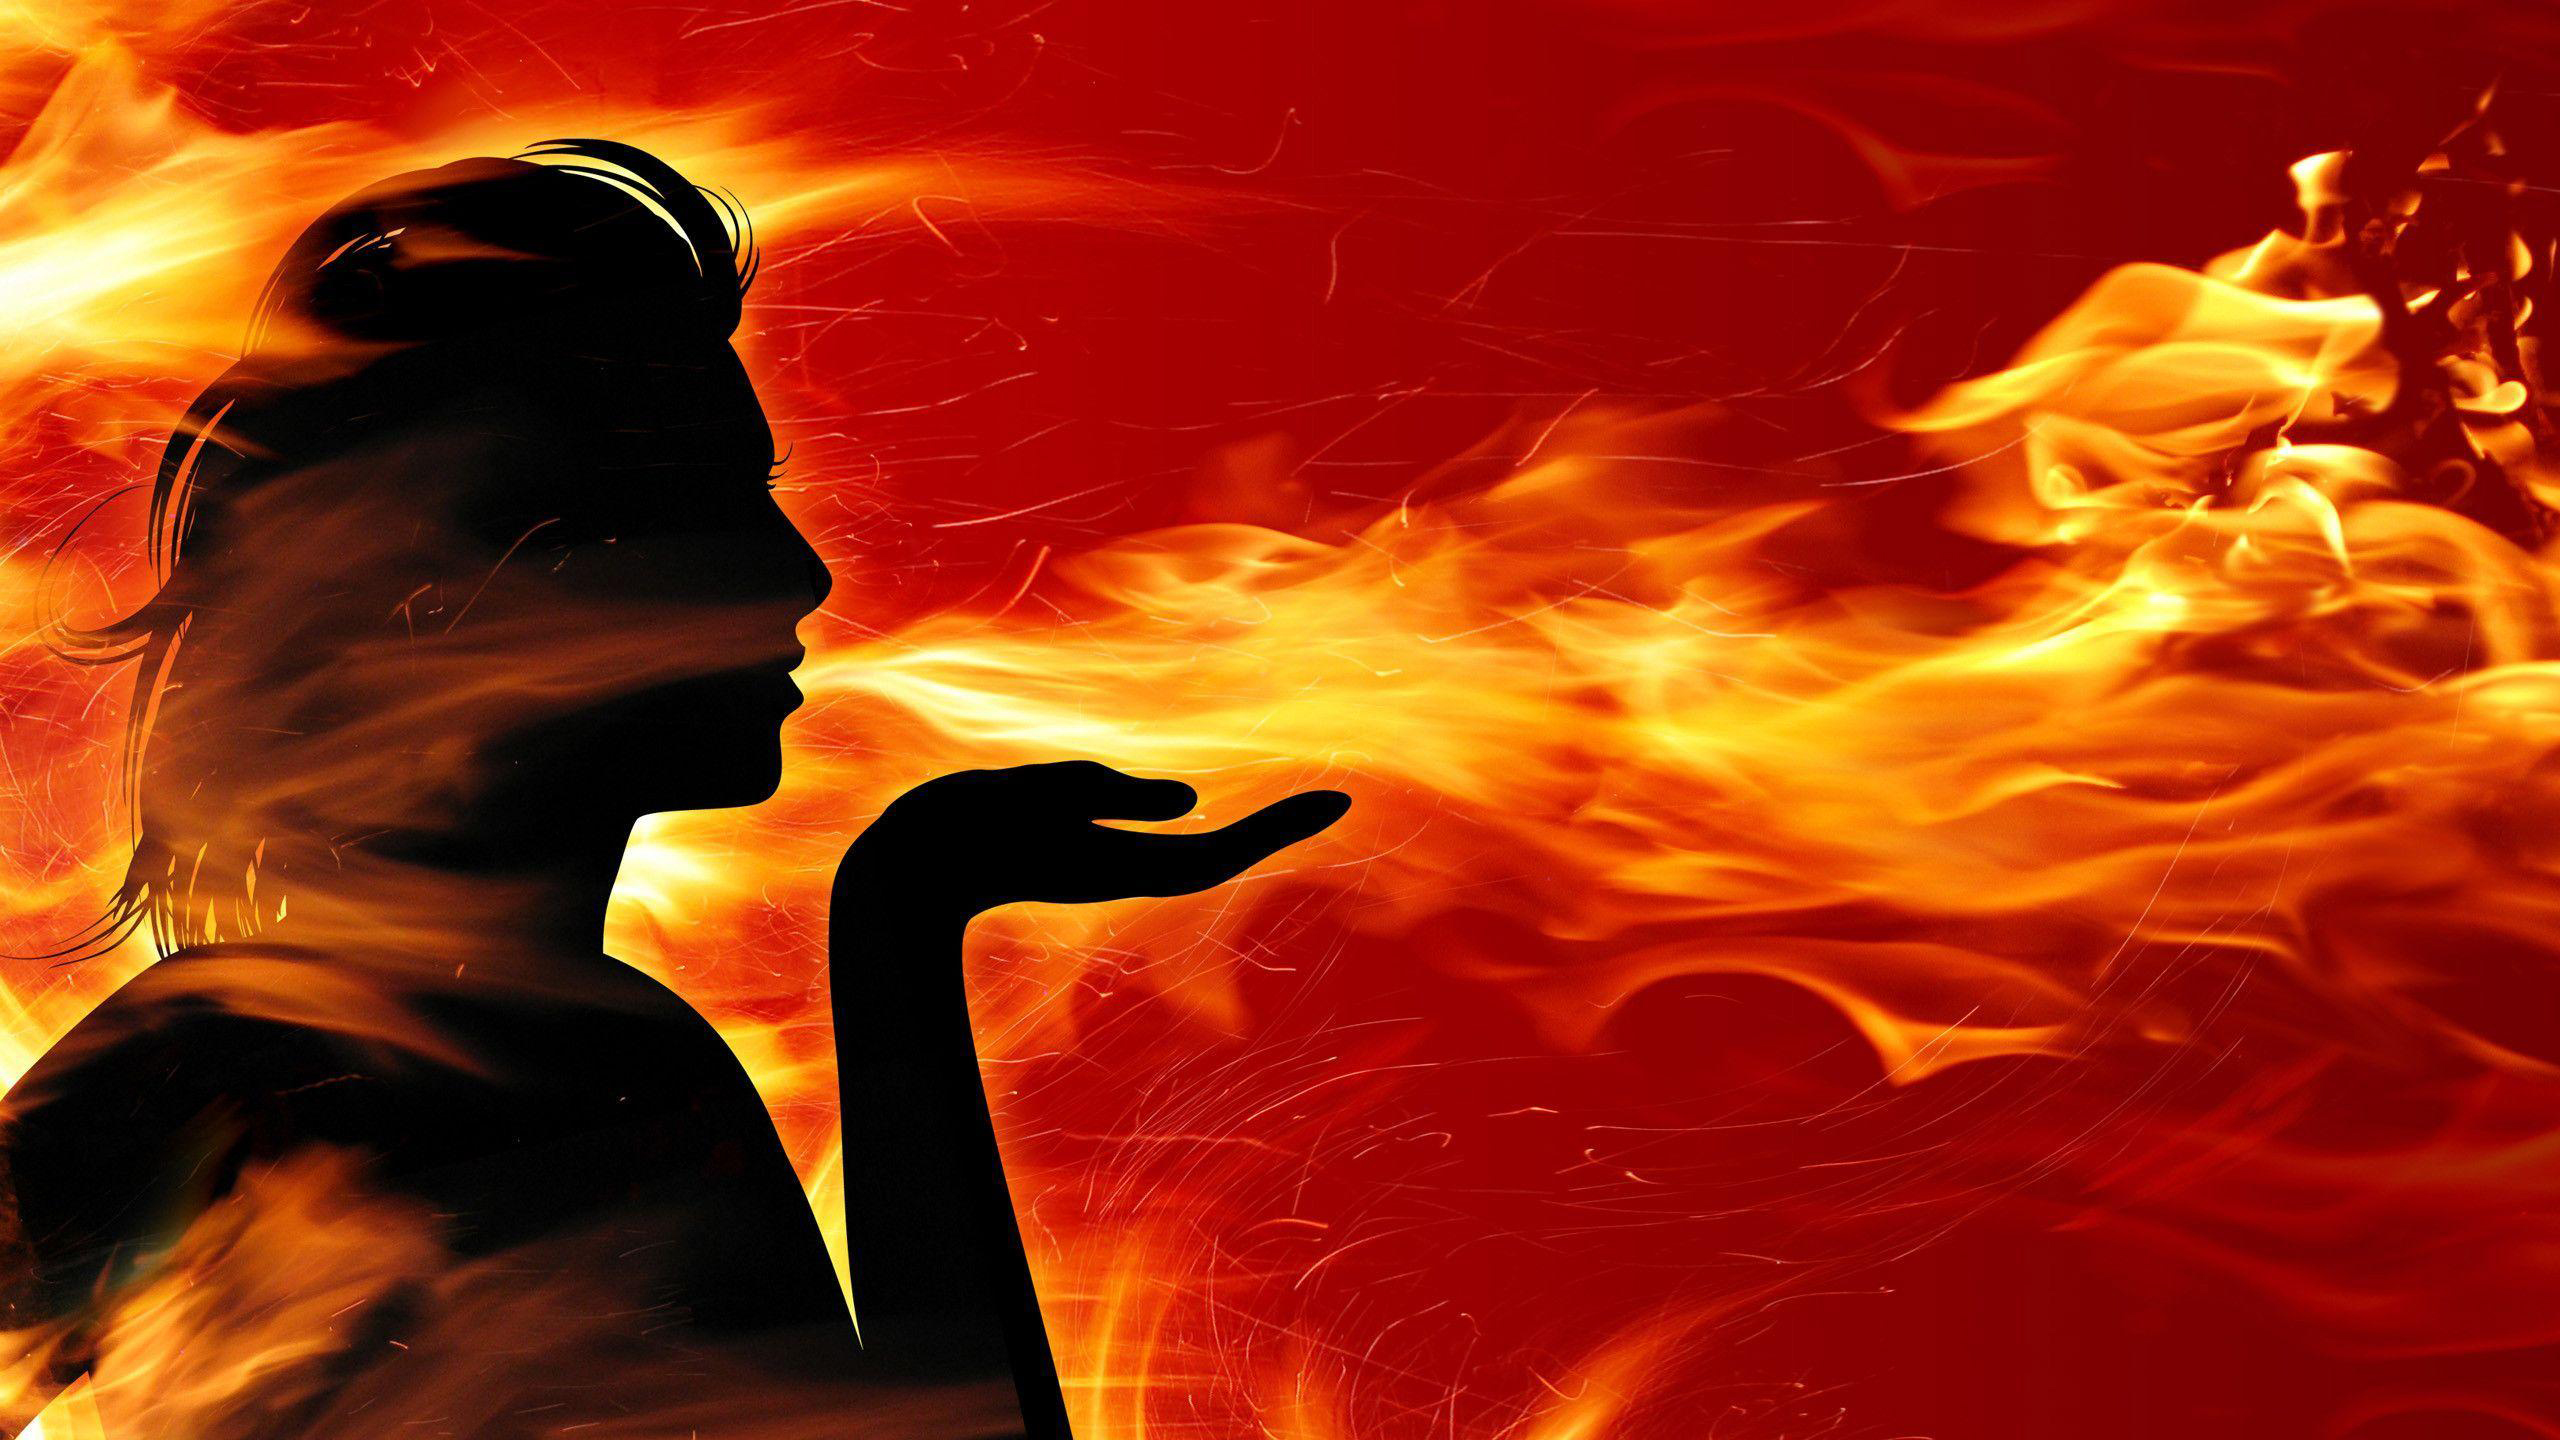 Woman Is Breathing Fire In Fire Wallpaper HD Fire